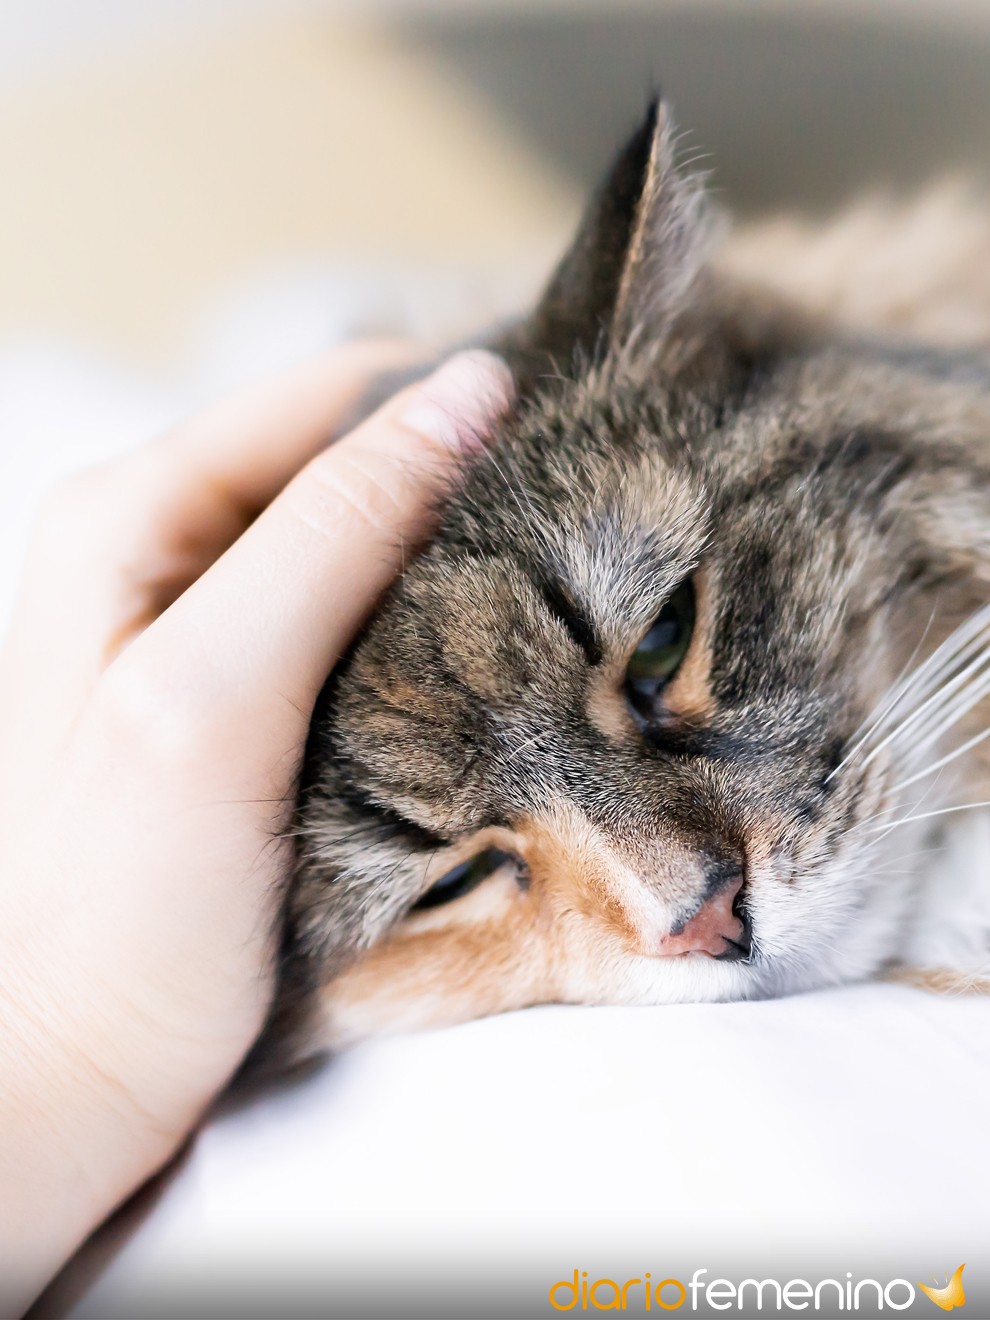 Soñar gatos enfermos: llegado momento de actuar